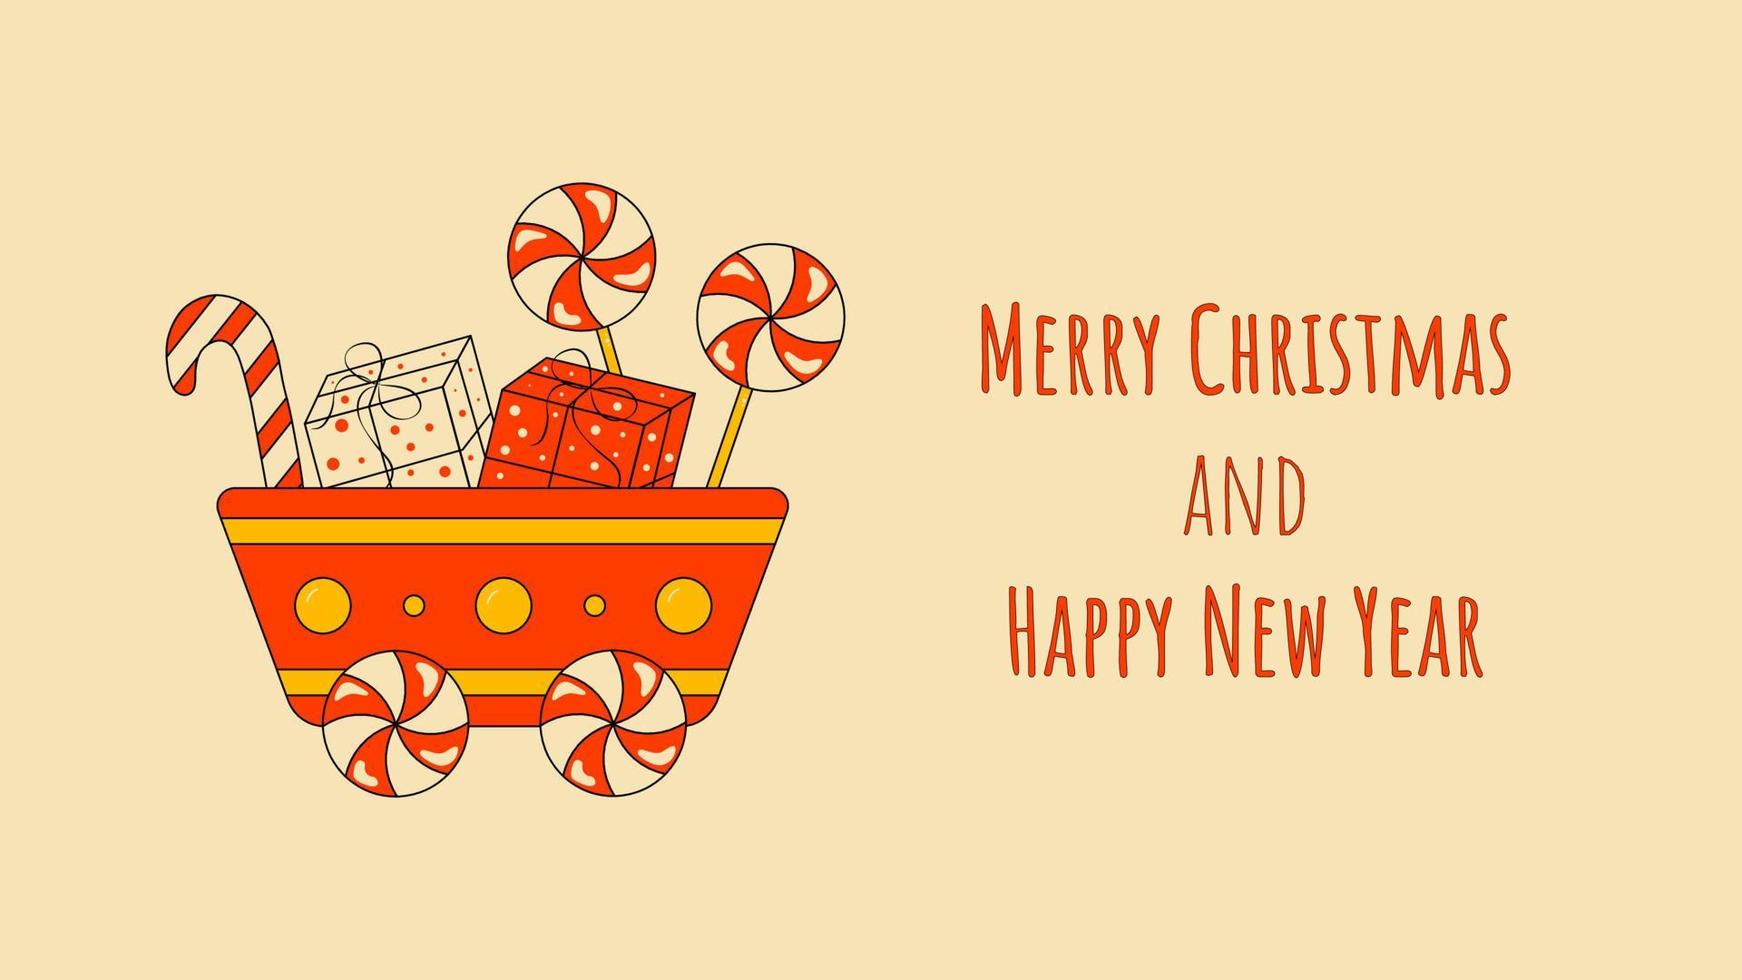 vagón rojo con regalos y dulces feliz navidad y feliz año nuevo tarjeta de felicitación o fondo en estilo retro para web vector